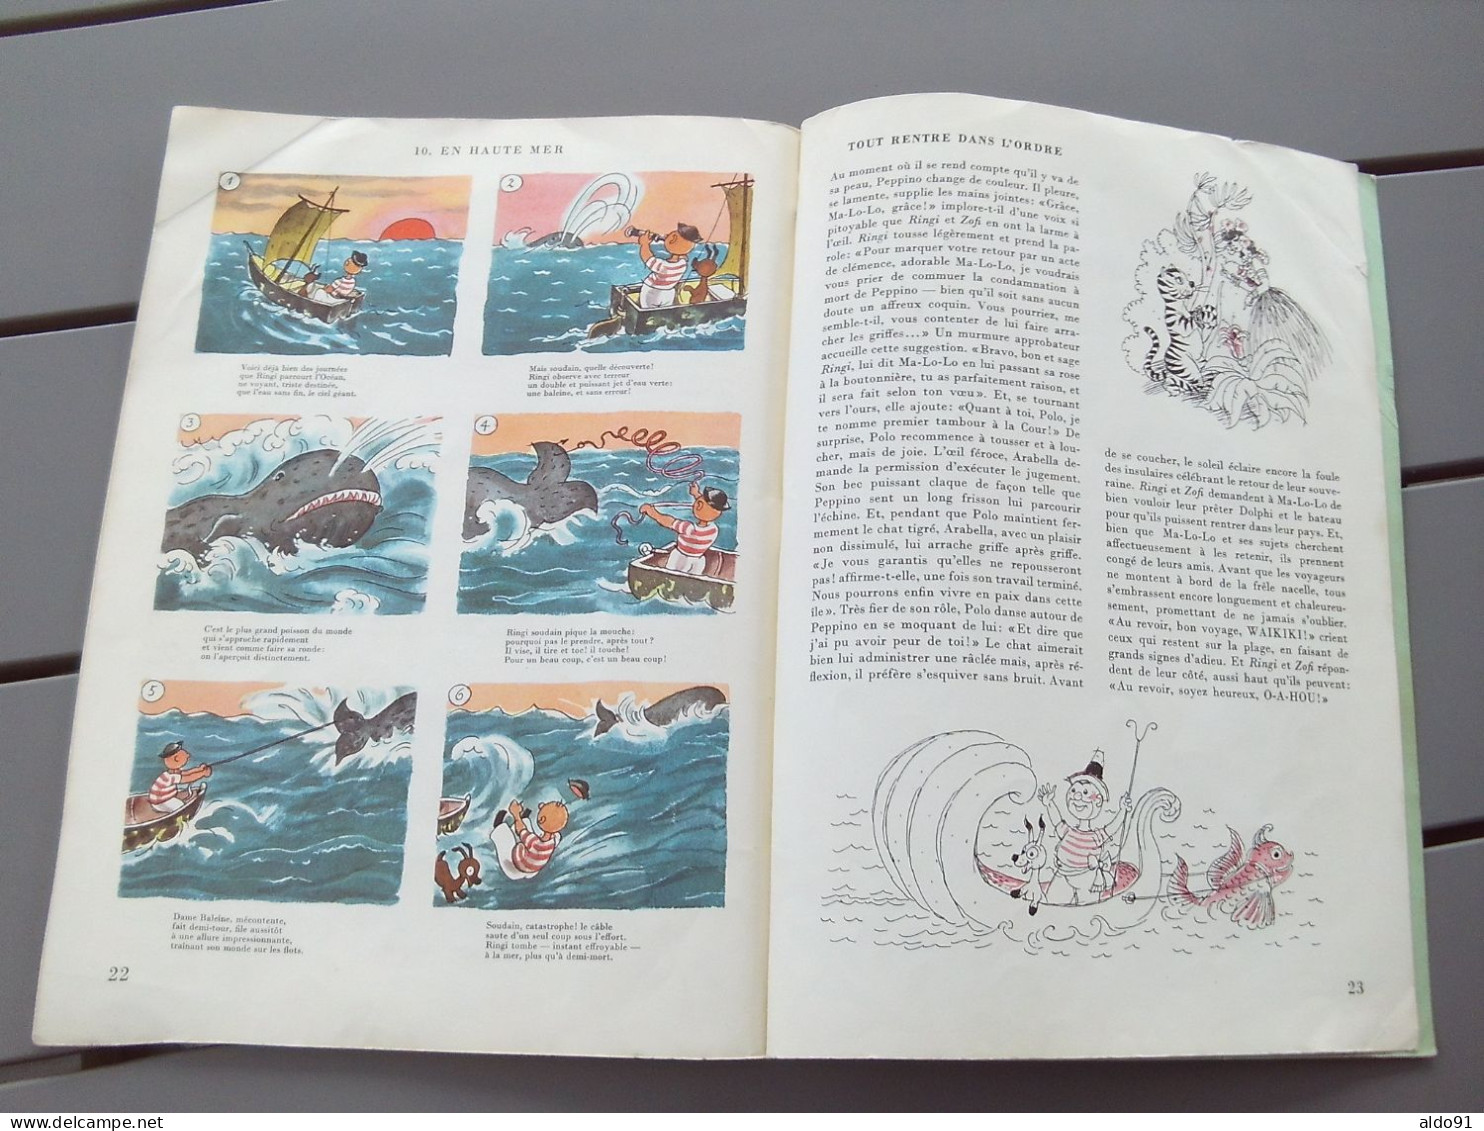 (B-D - Suisse - Livre d'Enfants RINGIER - 1952) - RINGI et ZOFI   " Perdus sur une île lointaine "...........voir scans